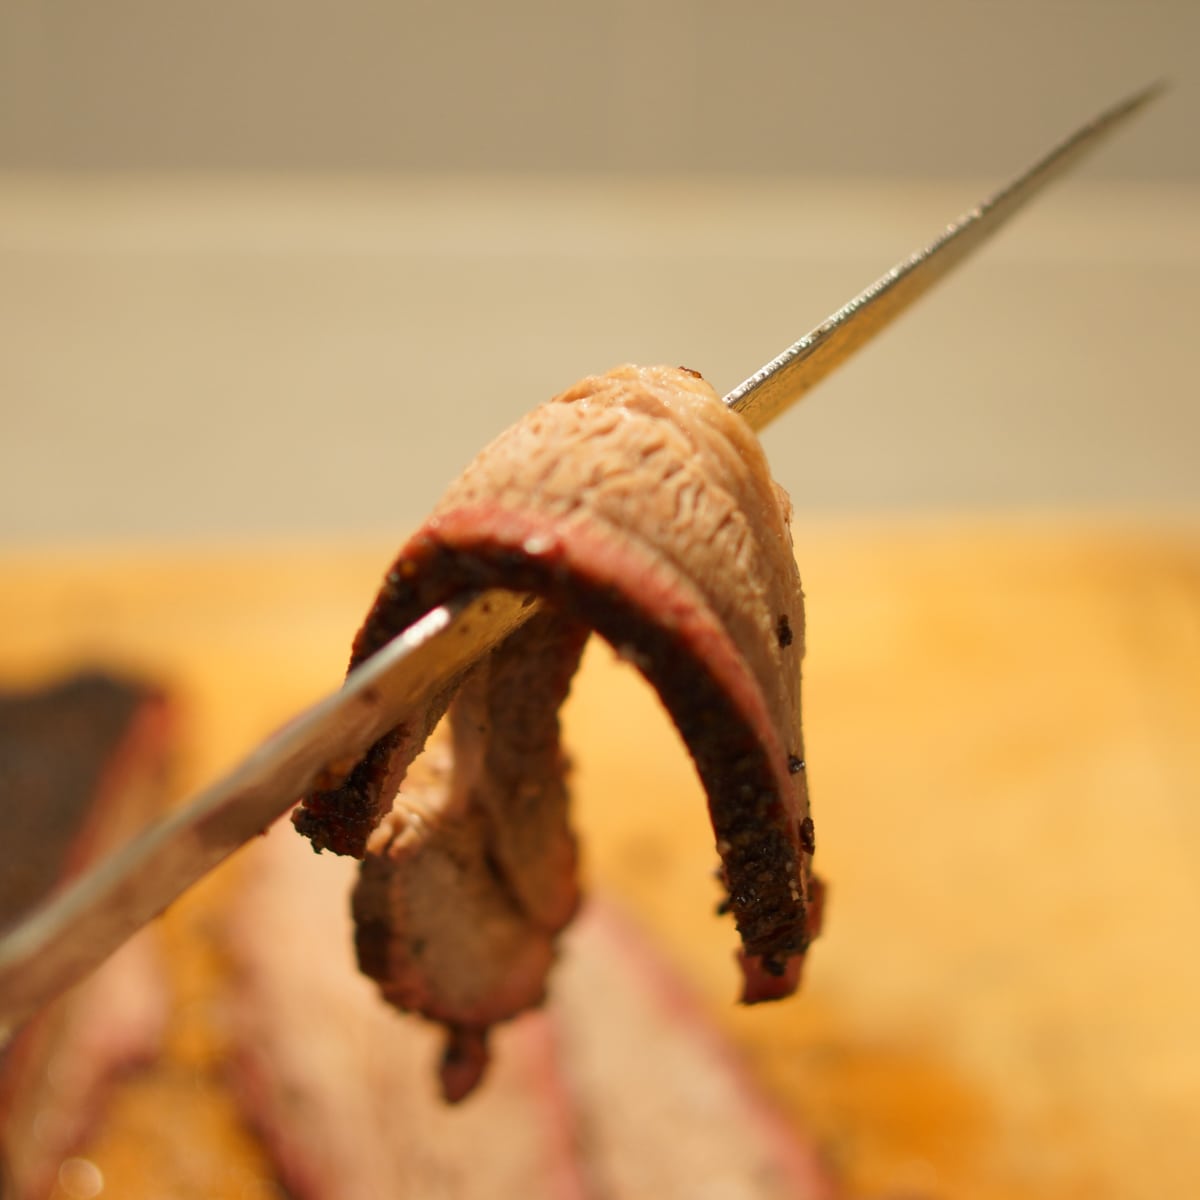 Slice of brisket bending over a knife.